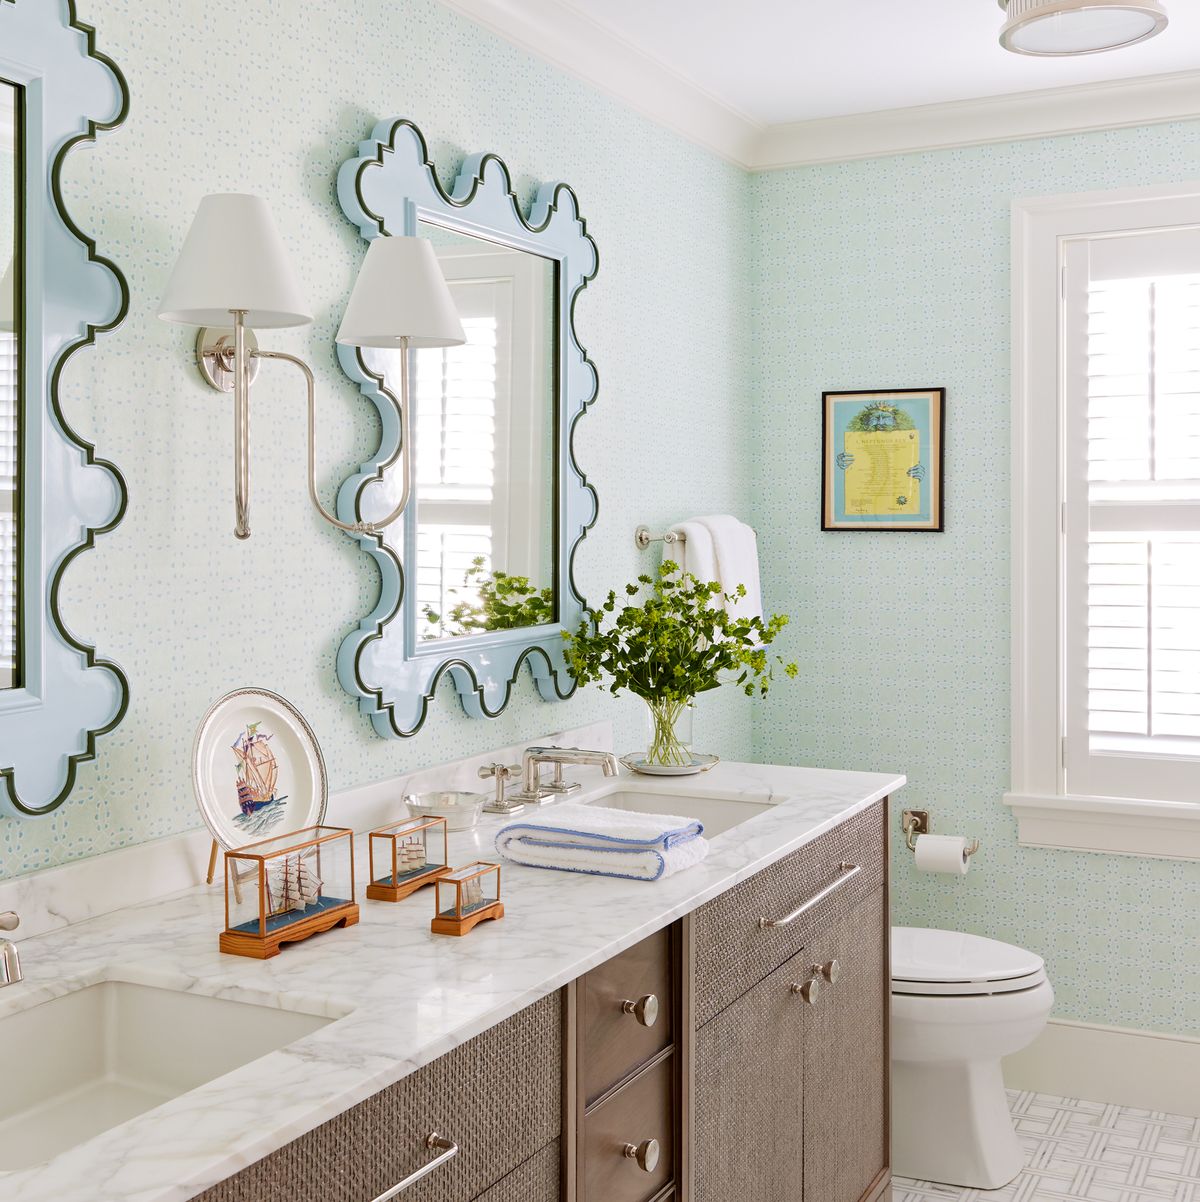 14 Bathroom Counter Organization Ideas - Metropolitan Bath & Tile